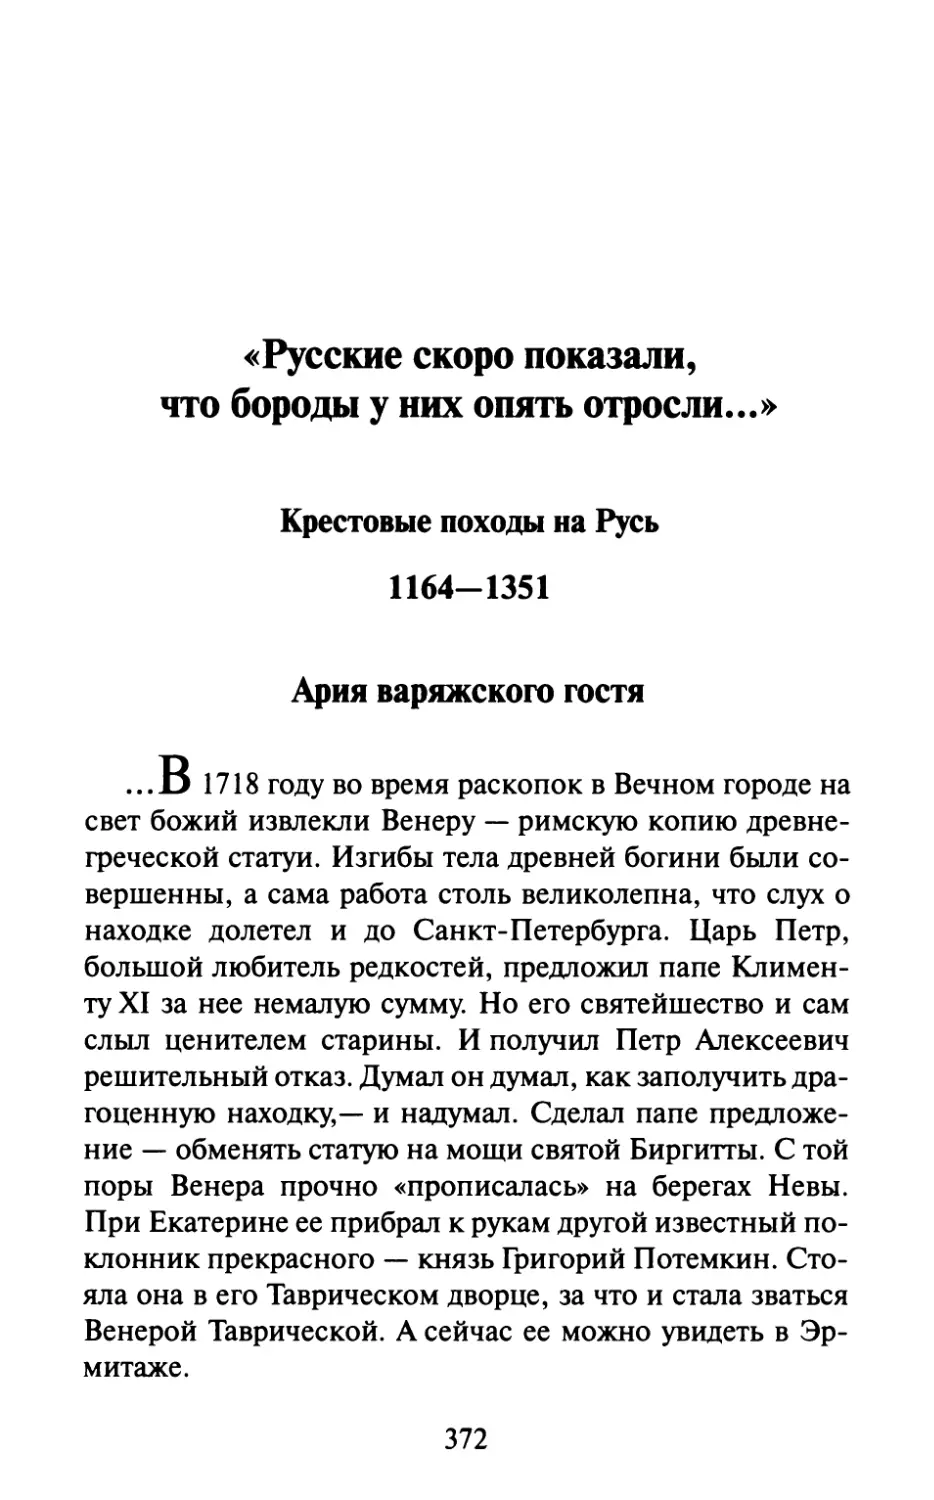 «Русские скоро показали, что бороды у них опять отросли...» Крестовые походы на Русь 1164-1351